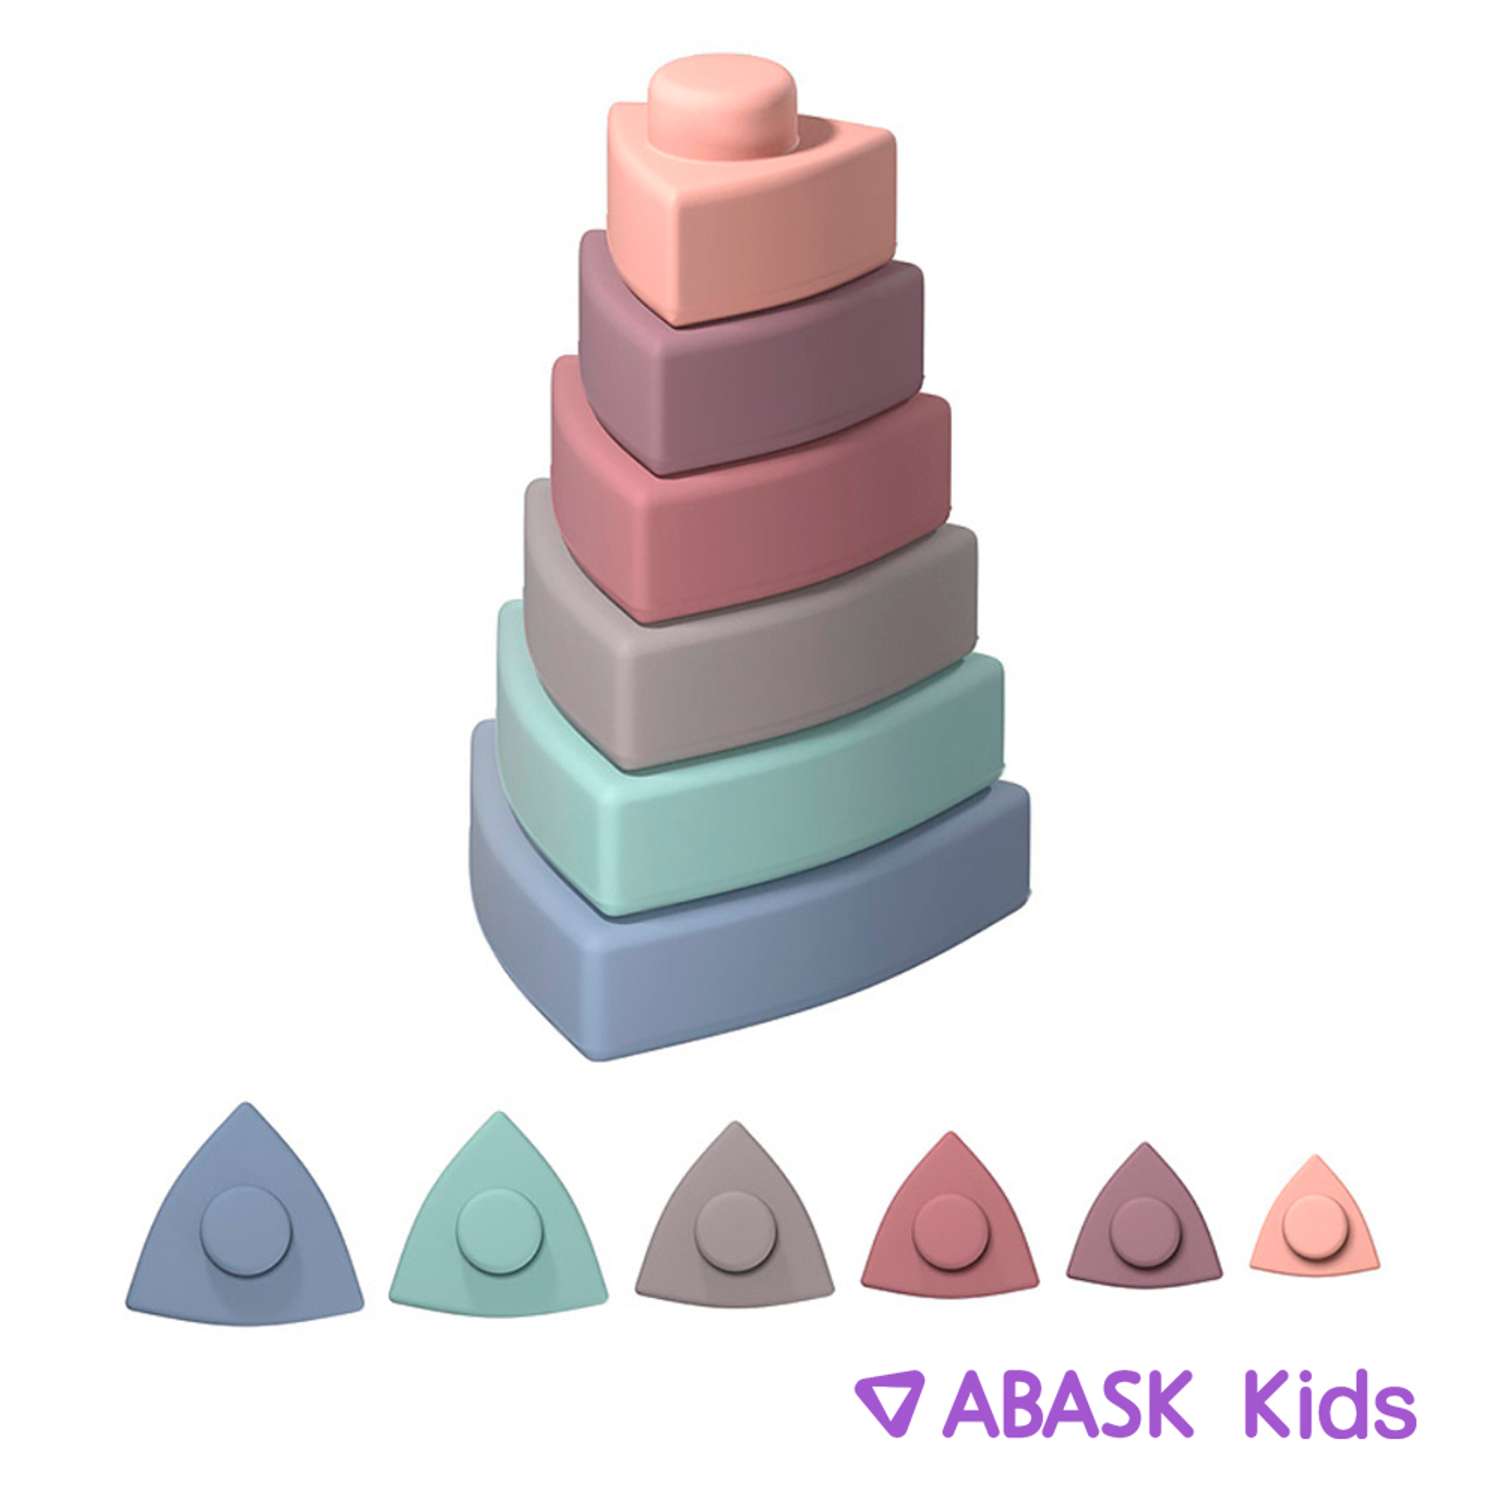 Пирамидка треугольная ABASK PASTEL - фото 1